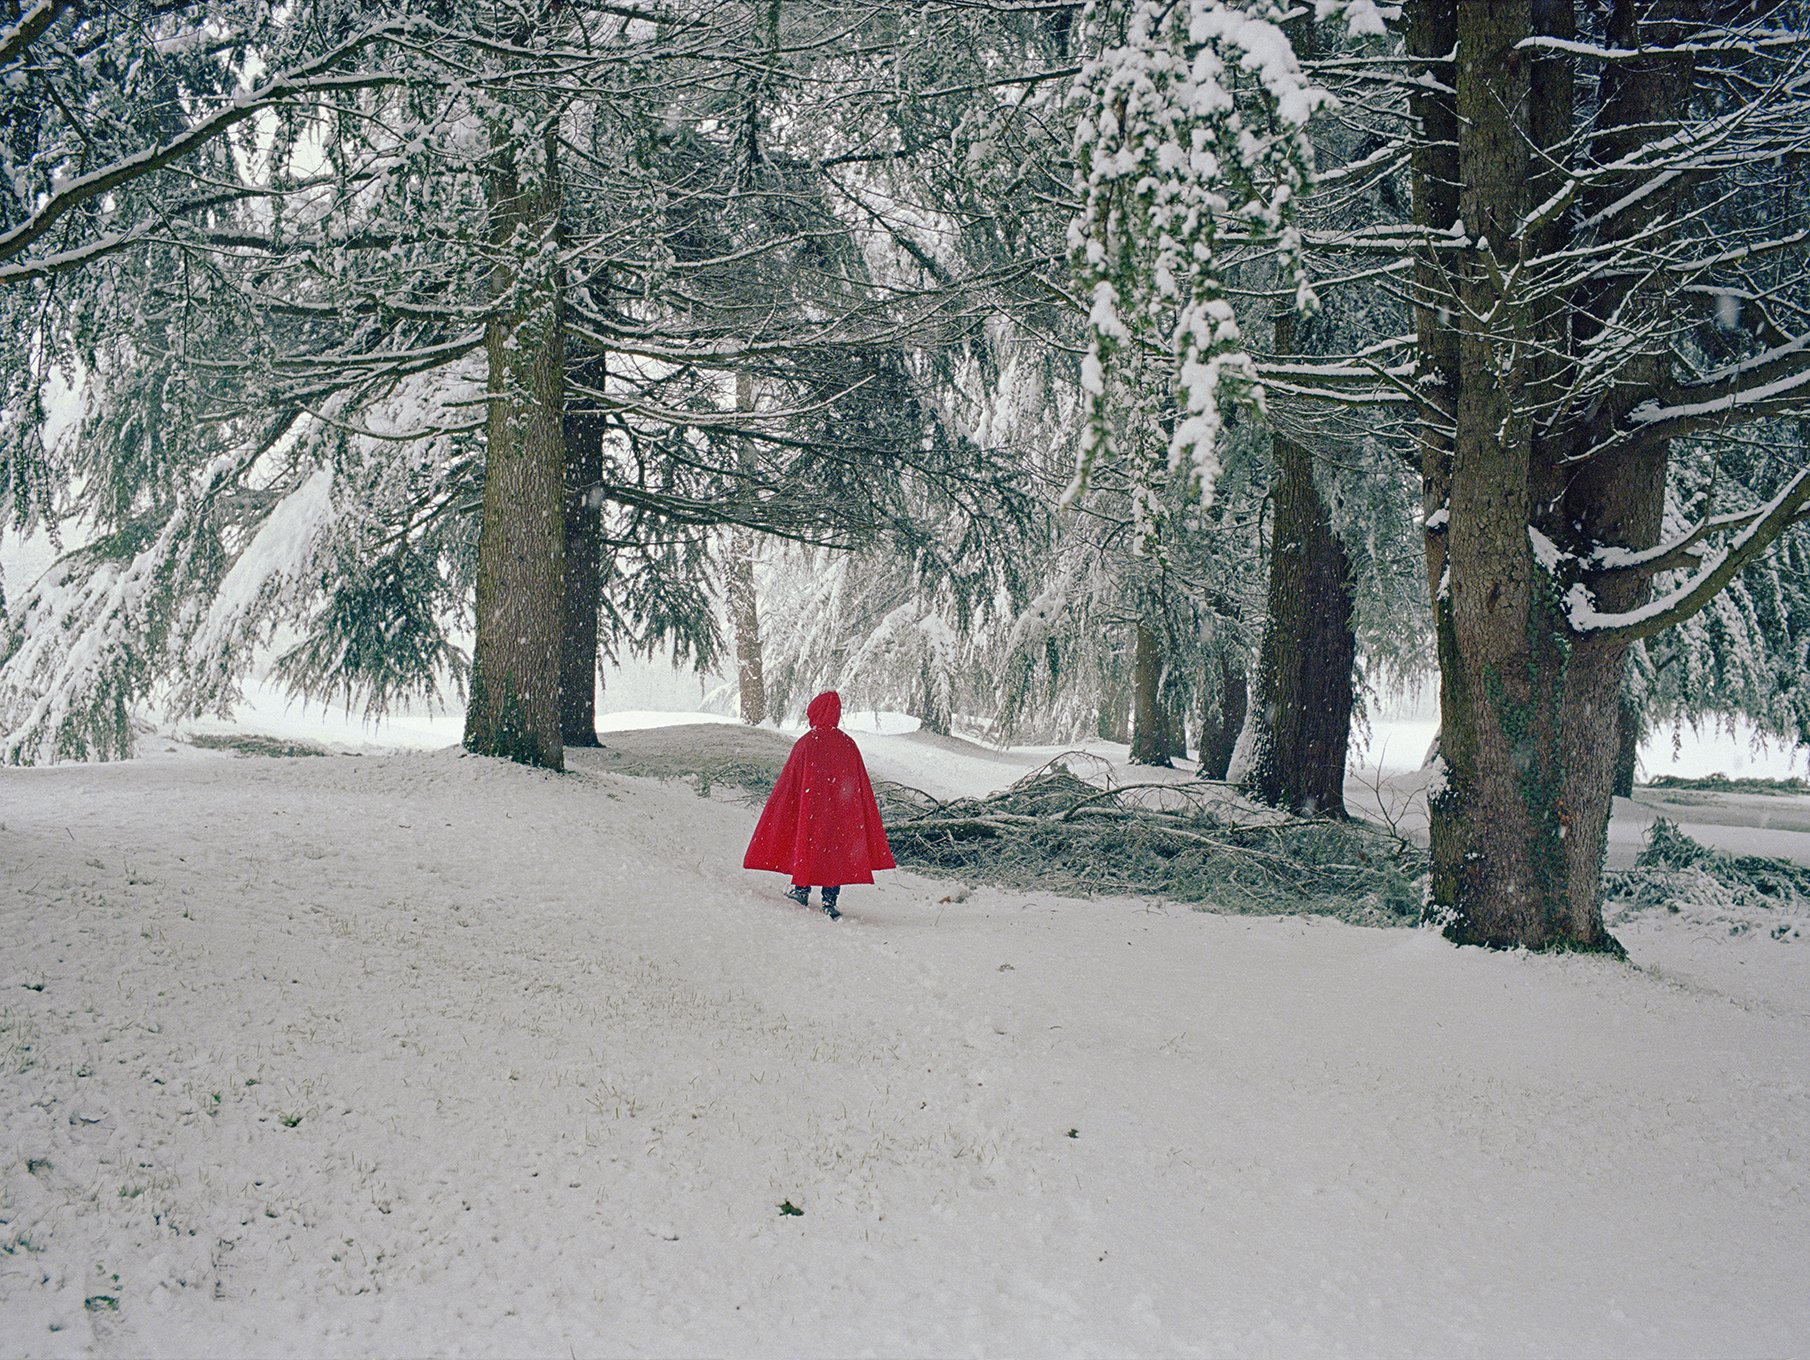   Little Red Riding Hood,  December 2020  